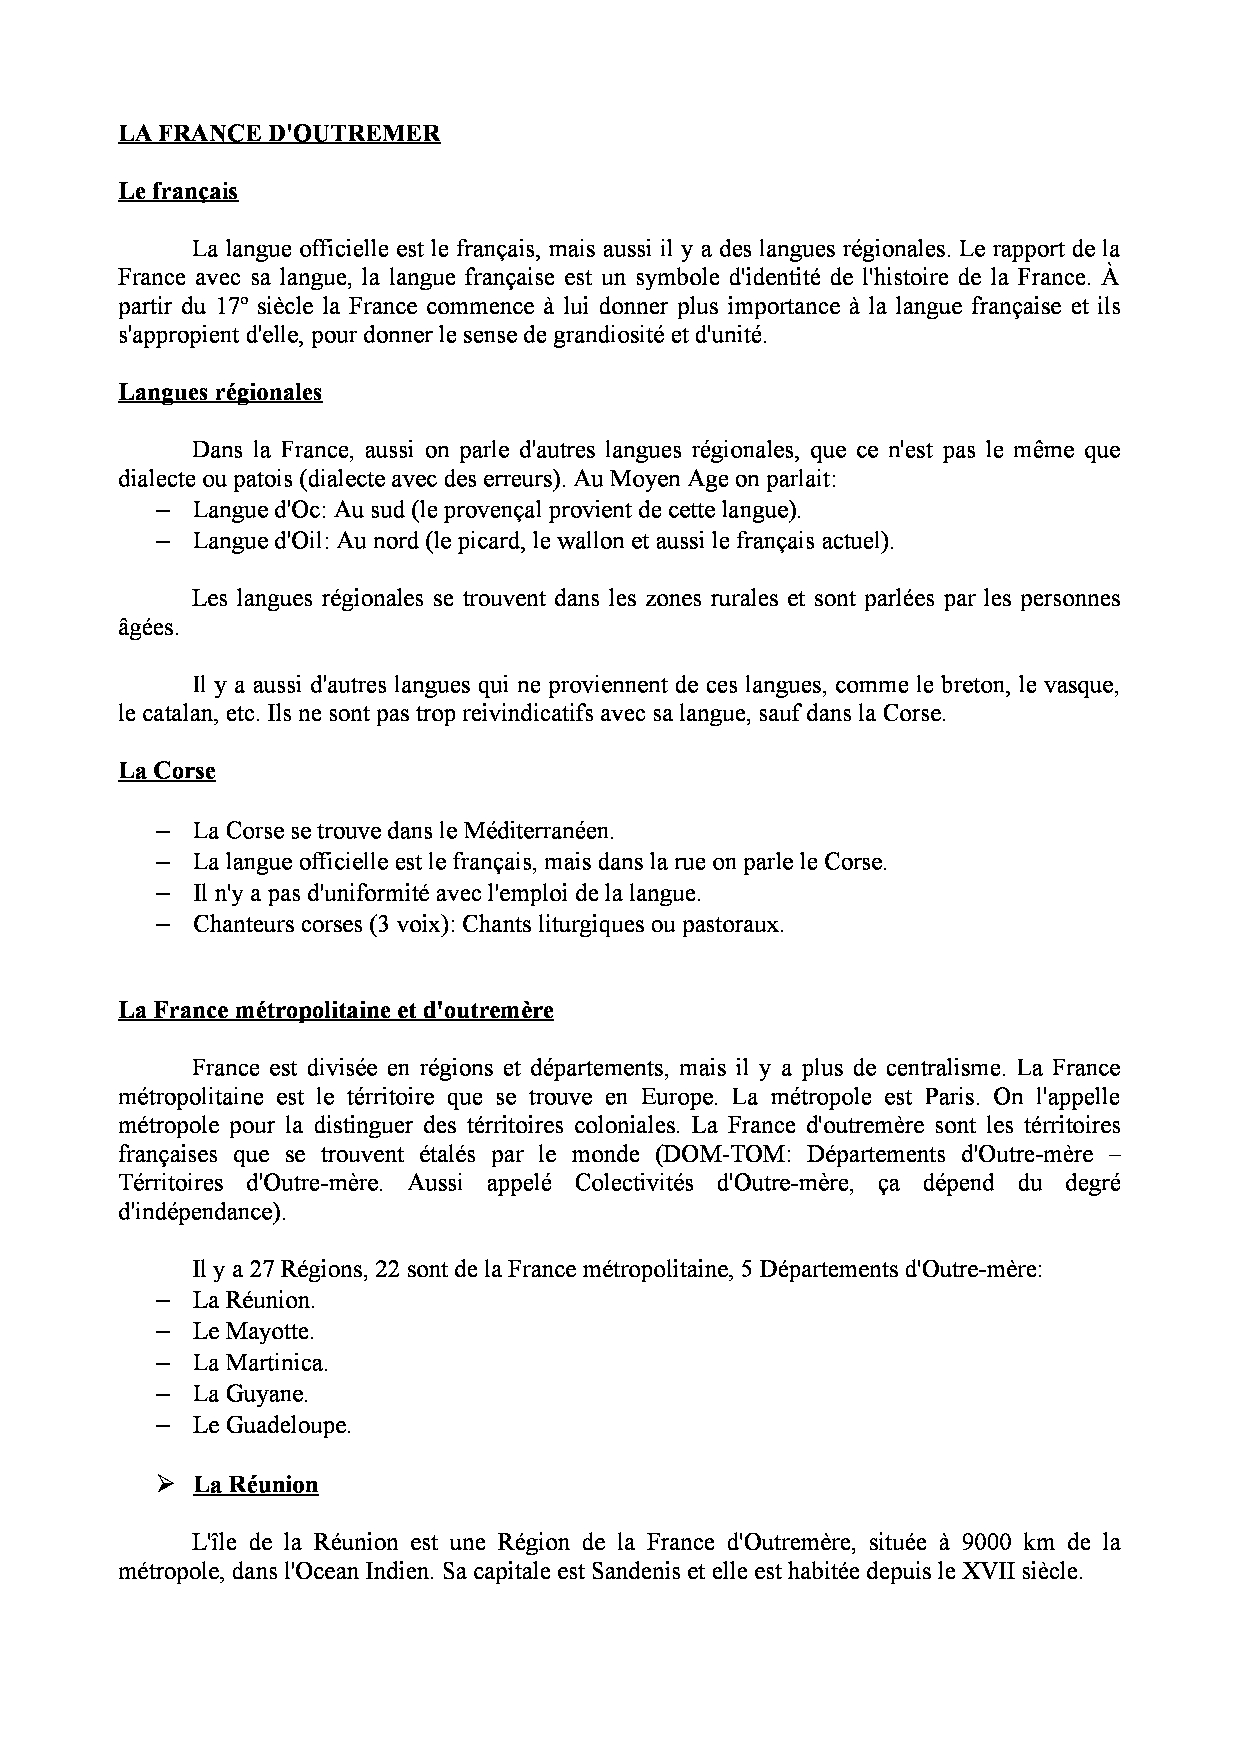 La France D'outremer - Apuntes De Idioma Francés - Docsity destiné Les 22 Régions De France Métropolitaine